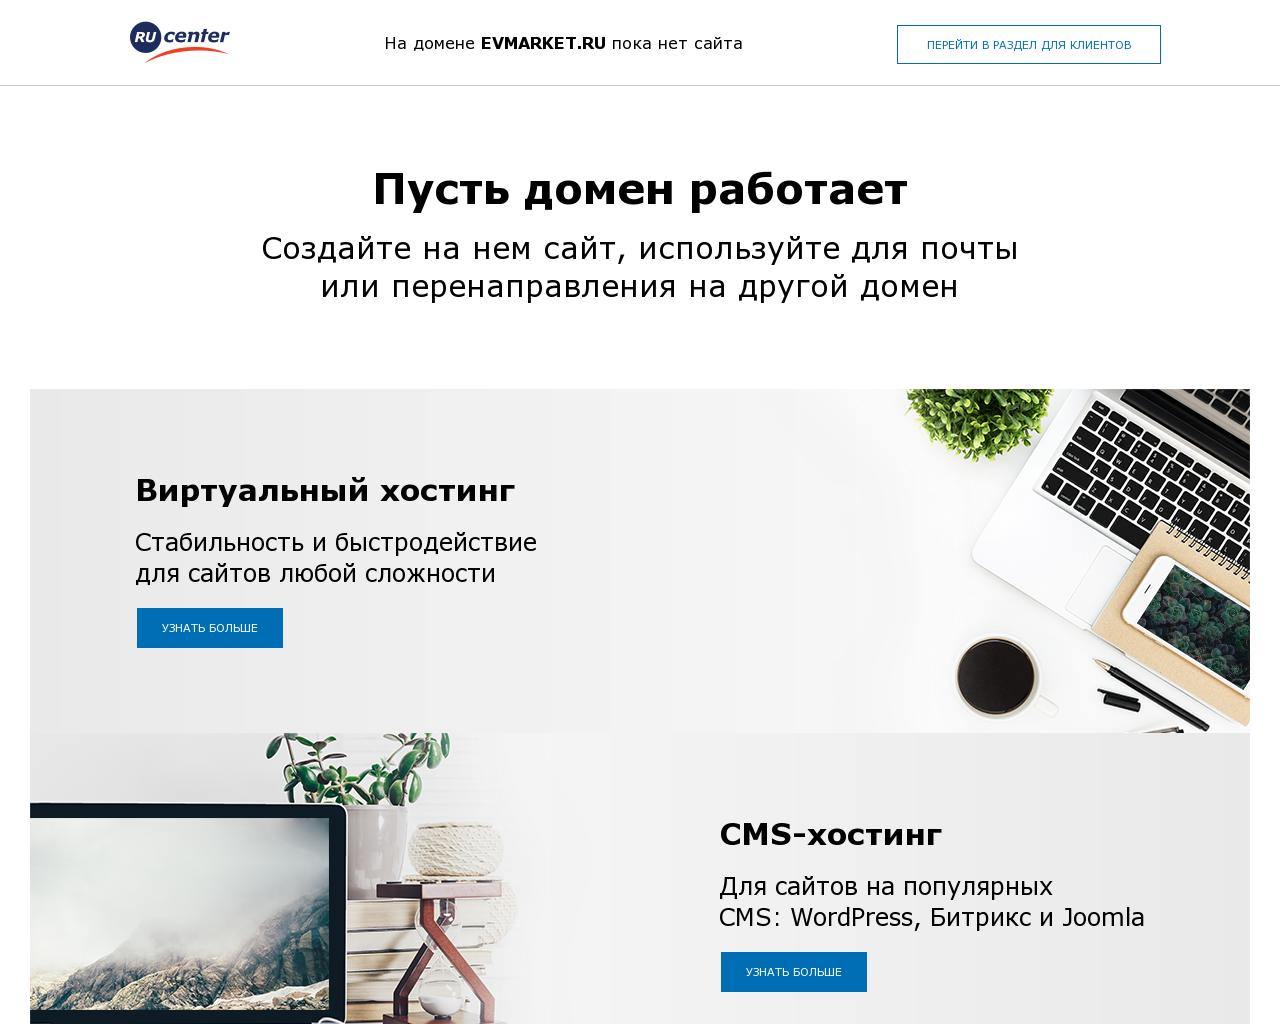 Изображение сайта evmarket.ru в разрешении 1280x1024